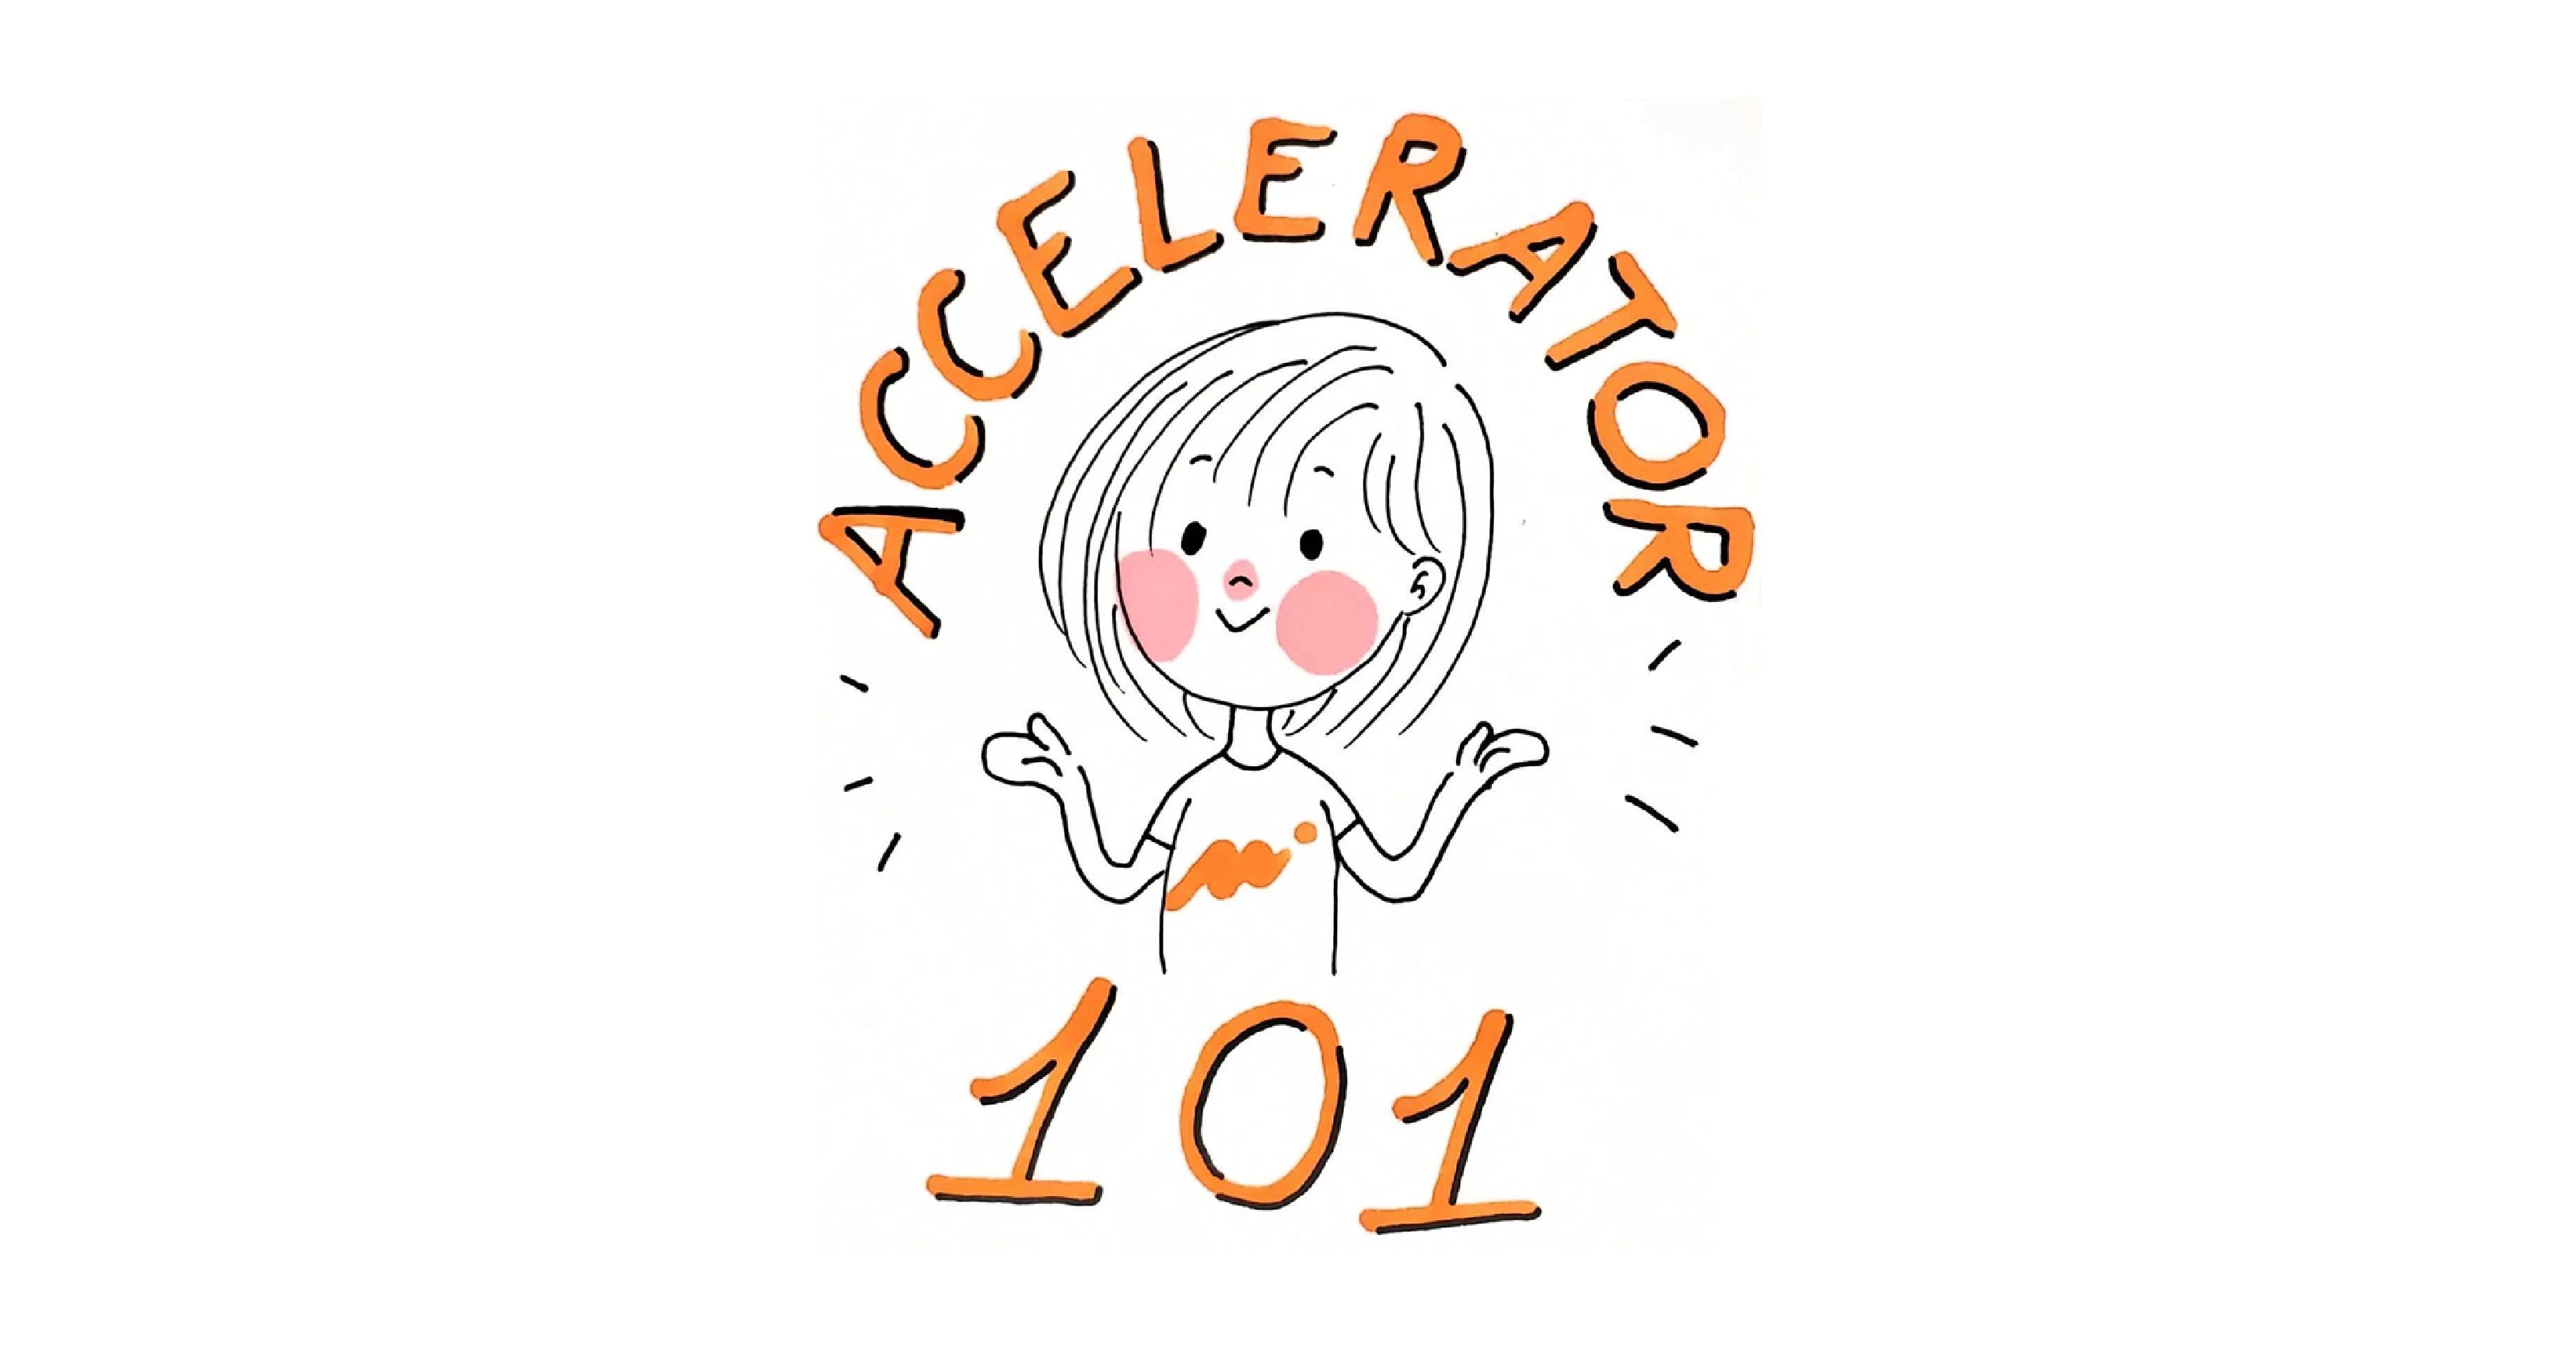 Accelerator 101